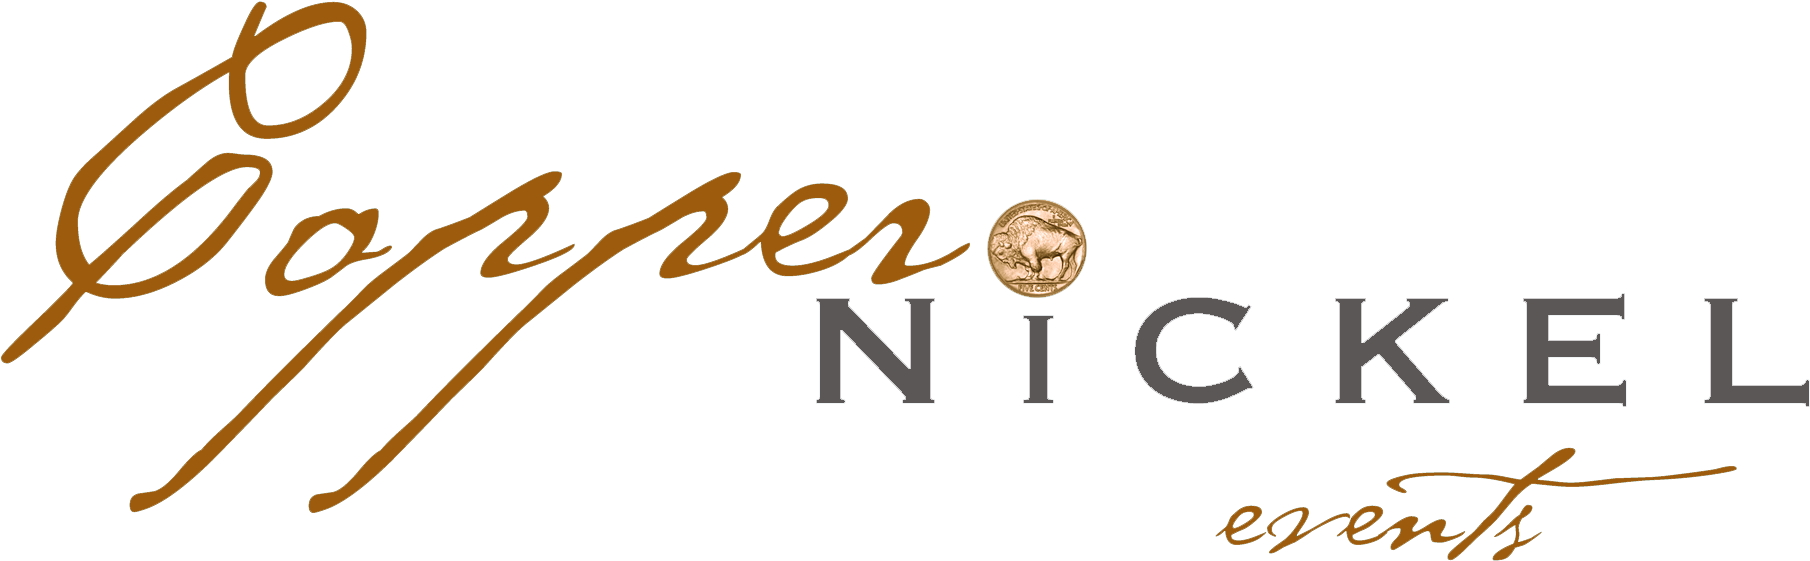 Copper Nickel Events Logo